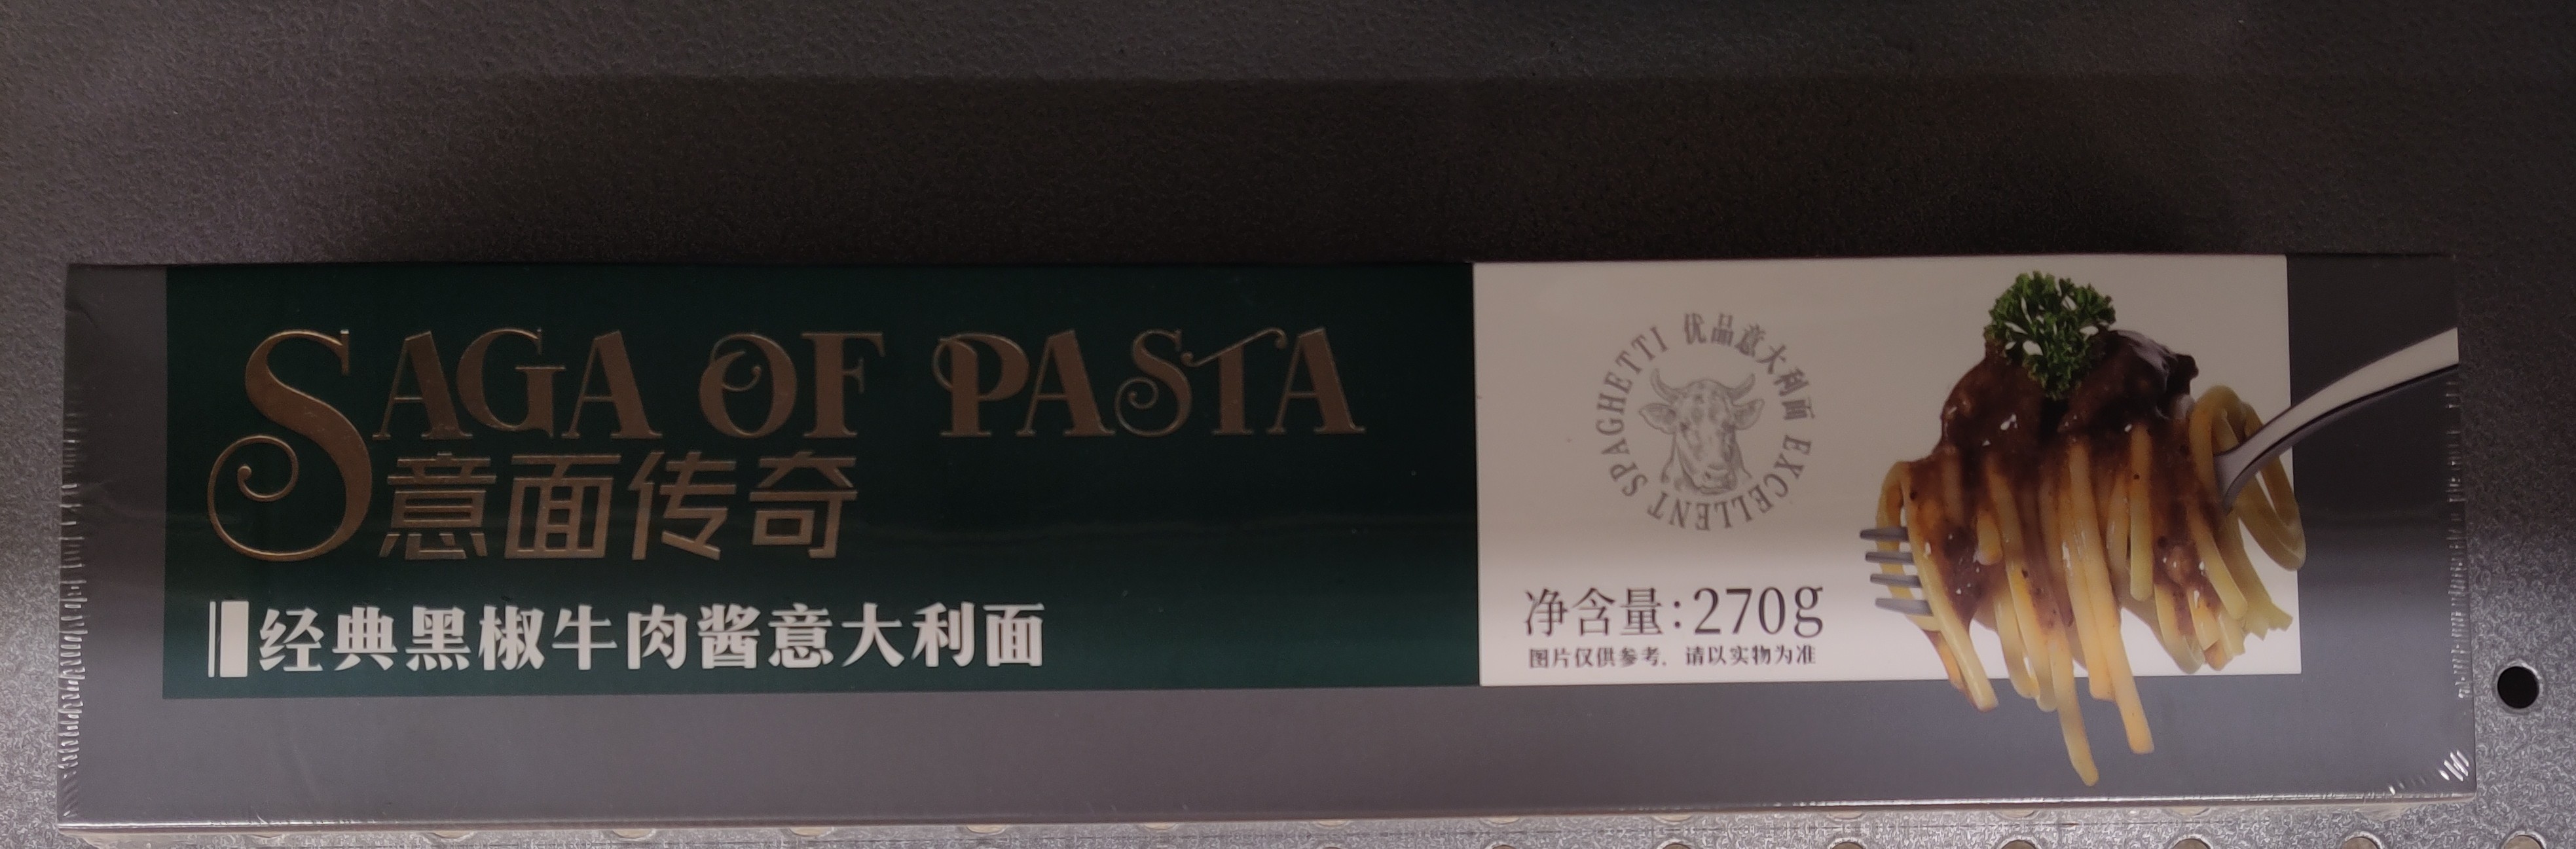 black-pepper-pasta